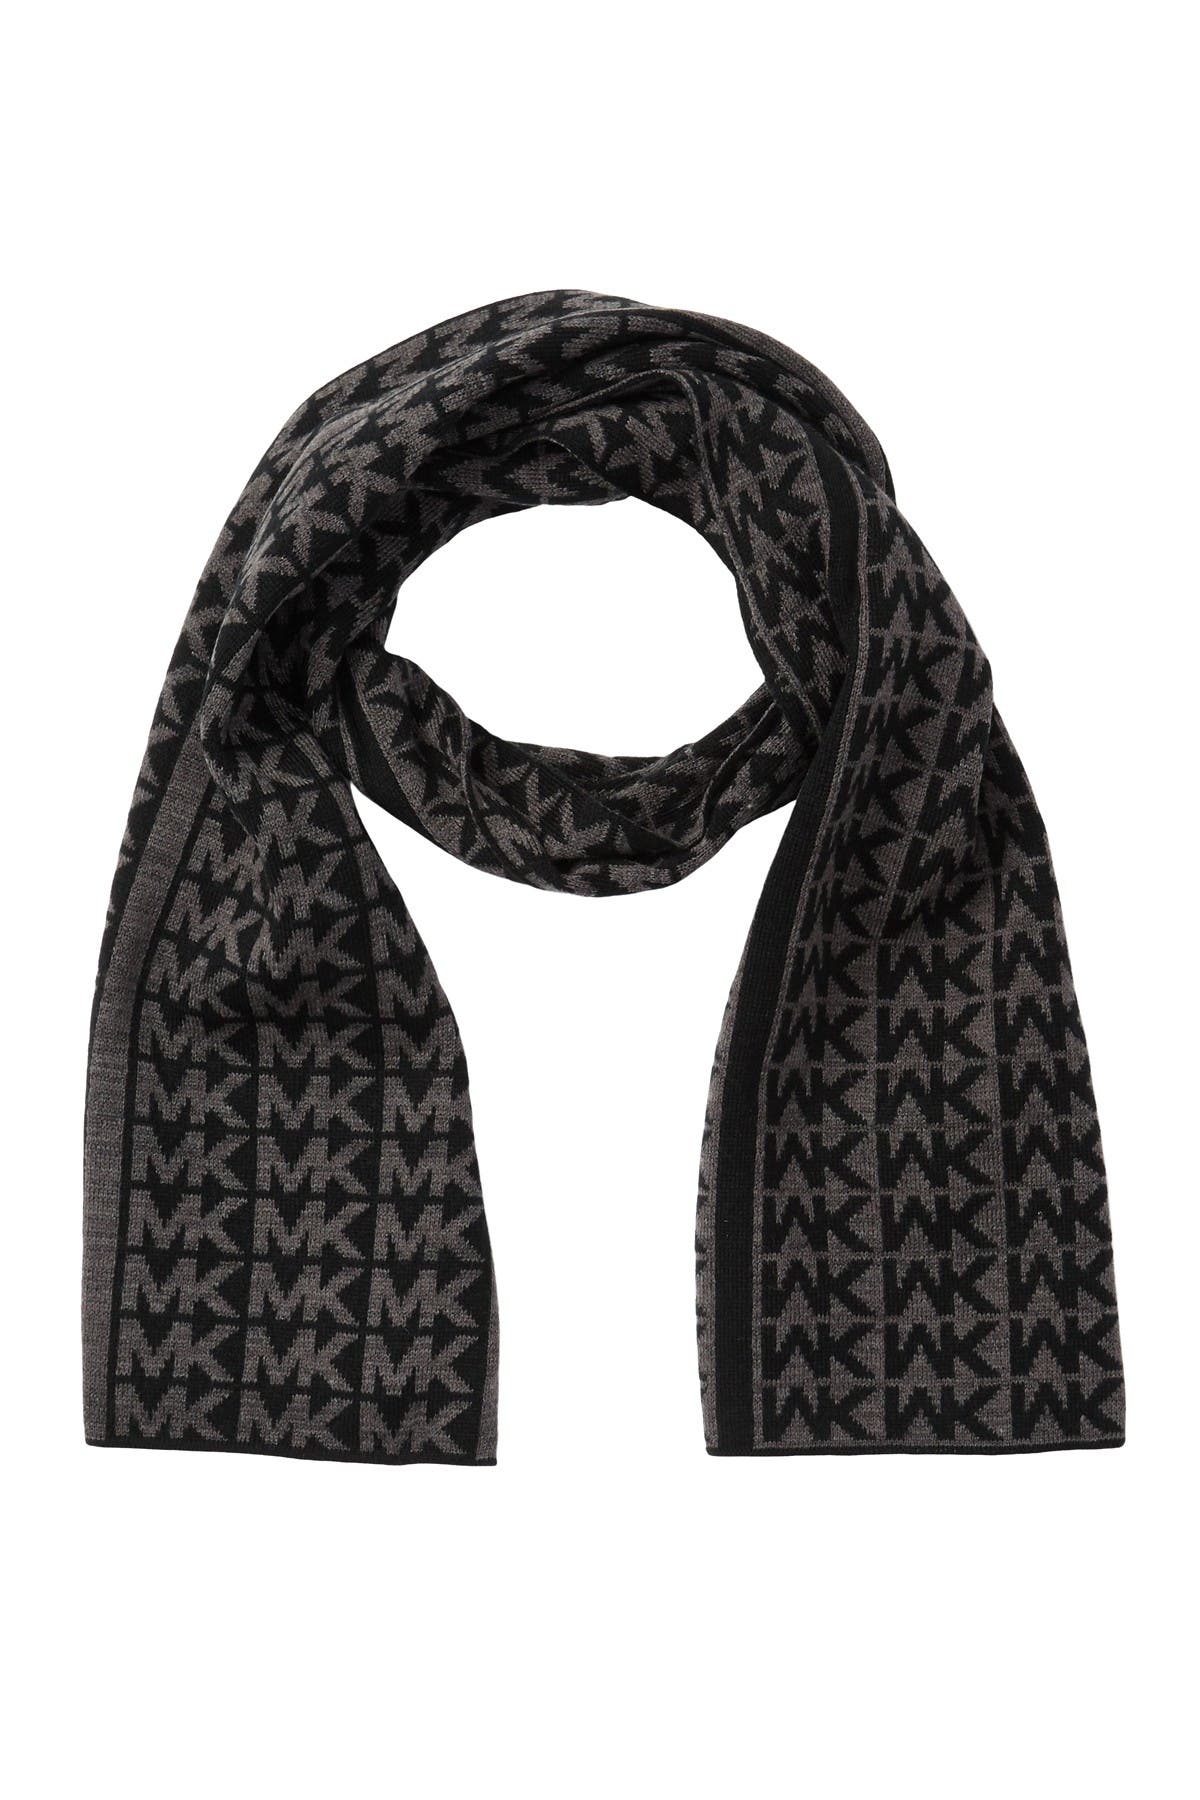 Michael Kors | Logo Knit Muffler 